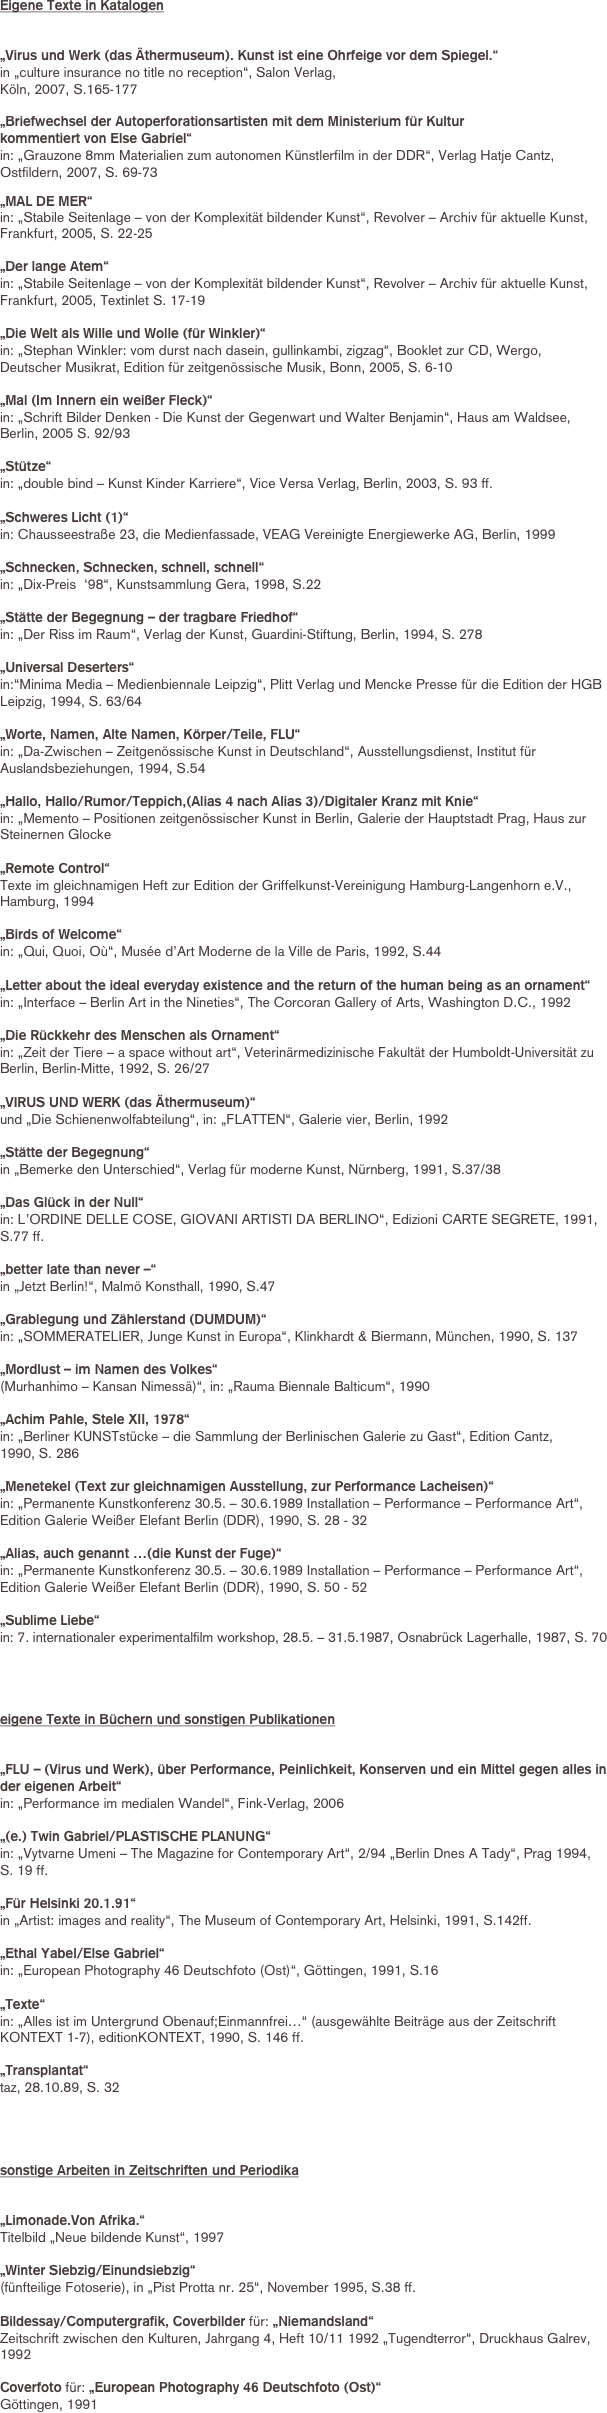 Eigene Texte in Katalogen


„Virus und Werk (das Äthermuseum). Kunst ist eine Ohrfeige vor dem Spiegel.“ 
in „culture insurance no title no reception“, Salon Verlag, 
Köln, 2007, S.165-177

„Briefwechsel der Autoperforationsartisten mit dem Ministerium für Kultur 
kommentiert von Else Gabriel“
in: „Grauzone 8mm Materialien zum autonomen Künstlerfilm in der DDR“, Verlag Hatje Cantz, Ostfildern, 2007, S. 69-73

„MAL DE MER“ 
in: „Stabile Seitenlage – von der Komplexität bildender Kunst“, Revolver – Archiv für aktuelle Kunst, Frankfurt, 2005, S. 22-25

„Der lange Atem“ 
in: „Stabile Seitenlage – von der Komplexität bildender Kunst“, Revolver – Archiv für aktuelle Kunst, Frankfurt, 2005, Textinlet S. 17-19

„Die Welt als Wille und Wolle (für Winkler)“ 
in: „Stephan Winkler: vom durst nach dasein, gullinkambi, zigzag“, Booklet zur CD, Wergo, 
Deutscher Musikrat, Edition für zeitgenössische Musik, Bonn, 2005, S. 6-10

„Mal (Im Innern ein weißer Fleck)“
in: „Schrift Bilder Denken - Die Kunst der Gegenwart und Walter Benjamin“, Haus am Waldsee,
Berlin, 2005 S. 92/93

„Stütze“ 
in: „double bind – Kunst Kinder Karriere“, Vice Versa Verlag, Berlin, 2003, S. 93 ff.

„Schweres Licht (1)“ 
in: Chausseestraße 23, die Medienfassade, VEAG Vereinigte Energiewerke AG, Berlin, 1999

„Schnecken, Schnecken, schnell, schnell“ 
in: „Dix-Preis  ‘98“, Kunstsammlung Gera, 1998, S.22

„Stätte der Begegnung – der tragbare Friedhof“ 
in: „Der Riss im Raum“, Verlag der Kunst, Guardini-Stiftung, Berlin, 1994, S. 278

„Universal Deserters“ 
in:“Minima Media – Medienbiennale Leipzig“, Plitt Verlag und Mencke Presse für die Edition der HGB Leipzig, 1994, S. 63/64

„Worte, Namen, Alte Namen, Körper/Teile, FLU“ 
in: „Da-Zwischen – Zeitgenössische Kunst in Deutschland“, Ausstellungsdienst, Institut für Auslandsbeziehungen, 1994, S.54

„Hallo, Hallo/Rumor/Teppich,(Alias 4 nach Alias 3)/Digitaler Kranz mit Knie“ 
in: „Memento – Positionen zeitgenössischer Kunst in Berlin, Galerie der Hauptstadt Prag, Haus zur Steinernen Glocke

„Remote Control“ 
Texte im gleichnamigen Heft zur Edition der Griffelkunst-Vereinigung Hamburg-Langenhorn e.V., Hamburg, 1994

„Birds of Welcome“ 
in: „Qui, Quoi, Où“, Musée d’Art Moderne de la Ville de Paris, 1992, S.44

„Letter about the ideal everyday existence and the return of the human being as an ornament“ 
in: „Interface – Berlin Art in the Nineties“, The Corcoran Gallery of Arts, Washington D.C., 1992

„Die Rückkehr des Menschen als Ornament“ 
in: „Zeit der Tiere – a space without art“, Veterinärmedizinische Fakultät der Humboldt-Universität zu Berlin, Berlin-Mitte, 1992, S. 26/27

„VIRUS UND WERK (das Äthermuseum)“ 
und „Die Schienenwolfabteilung“, in: „FLATTEN“, Galerie vier, Berlin, 1992

„Stätte der Begegnung“ 
in „Bemerke den Unterschied“, Verlag für moderne Kunst, Nürnberg, 1991, S.37/38

„Das Glück in der Null“ 
in: L’ORDINE DELLE COSE, GIOVANI ARTISTI DA BERLINO“, Edizioni CARTE SEGRETE, 1991, 
S.77 ff.

„better late than never –“ 
in „Jetzt Berlin!“, Malmö Konsthall, 1990, S.47

„Grablegung und Zählerstand (DUMDUM)“ 
in: „SOMMERATELIER, Junge Kunst in Europa“, Klinkhardt & Biermann, München, 1990, S. 137

„Mordlust – im Namen des Volkes“ 
(Murhanhimo – Kansan Nimessä)“, in: „Rauma Biennale Balticum“, 1990

„Achim Pahle, Stele XII, 1978“ 
in: „Berliner KUNSTstücke – die Sammlung der Berlinischen Galerie zu Gast“, Edition Cantz, 
1990, S. 286

„Menetekel (Text zur gleichnamigen Ausstellung, zur Performance Lacheisen)“ 
in: „Permanente Kunstkonferenz 30.5. – 30.6.1989 Installation – Performance – Performance Art“, Edition Galerie Weißer Elefant Berlin (DDR), 1990, S. 28 - 32 

„Alias, auch genannt …(die Kunst der Fuge)“ 
in: „Permanente Kunstkonferenz 30.5. – 30.6.1989 Installation – Performance – Performance Art“, Edition Galerie Weißer Elefant Berlin (DDR), 1990, S. 50 - 52 

„Sublime Liebe“ 
in: 7. internationaler experimentalfilm workshop, 28.5. – 31.5.1987, Osnabrück Lagerhalle, 1987, S. 70




eigene Texte in Büchern und sonstigen Publikationen


„FLU – (Virus und Werk), über Performance, Peinlichkeit, Konserven und ein Mittel gegen alles in der eigenen Arbeit“ 
in: „Performance im medialen Wandel“, Fink-Verlag, 2006

„(e.) Twin Gabriel/PLASTISCHE PLANUNG“ 
in: „Vytvarne Umeni – The Magazine for Contemporary Art“, 2/94 „Berlin Dnes A Tady“, Prag 1994, 
S. 19 ff.

„Für Helsinki 20.1.91“ 
in „Artist: images and reality“, The Museum of Contemporary Art, Helsinki, 1991, S.142ff.

„Ethal Yabel/Else Gabriel“ 
in: „European Photography 46 Deutschfoto (Ost)“, Göttingen, 1991, S.16

„Texte“ 
in: „Alles ist im Untergrund Obenauf;Einmannfrei…“ (ausgewählte Beiträge aus der Zeitschrift KONTEXT 1-7), editionKONTEXT, 1990, S. 146 ff.

„Transplantat“ 
taz, 28.10.89, S. 32




sonstige Arbeiten in Zeitschriften und Periodika


„Limonade.Von Afrika.“ 
Titelbild „Neue bildende Kunst“, 1997

„Winter Siebzig/Einundsiebzig“ 
(fünfteilige Fotoserie), in „Pist Protta nr. 25“, November 1995, S.38 ff.

Bildessay/Computergrafik, Coverbilder für: „Niemandsland“ 
Zeitschrift zwischen den Kulturen, Jahrgang 4, Heft 10/11 1992 „Tugendterror“, Druckhaus Galrev, 1992

Coverfoto für: „European Photography 46 Deutschfoto (Ost)“ 
Göttingen, 1991